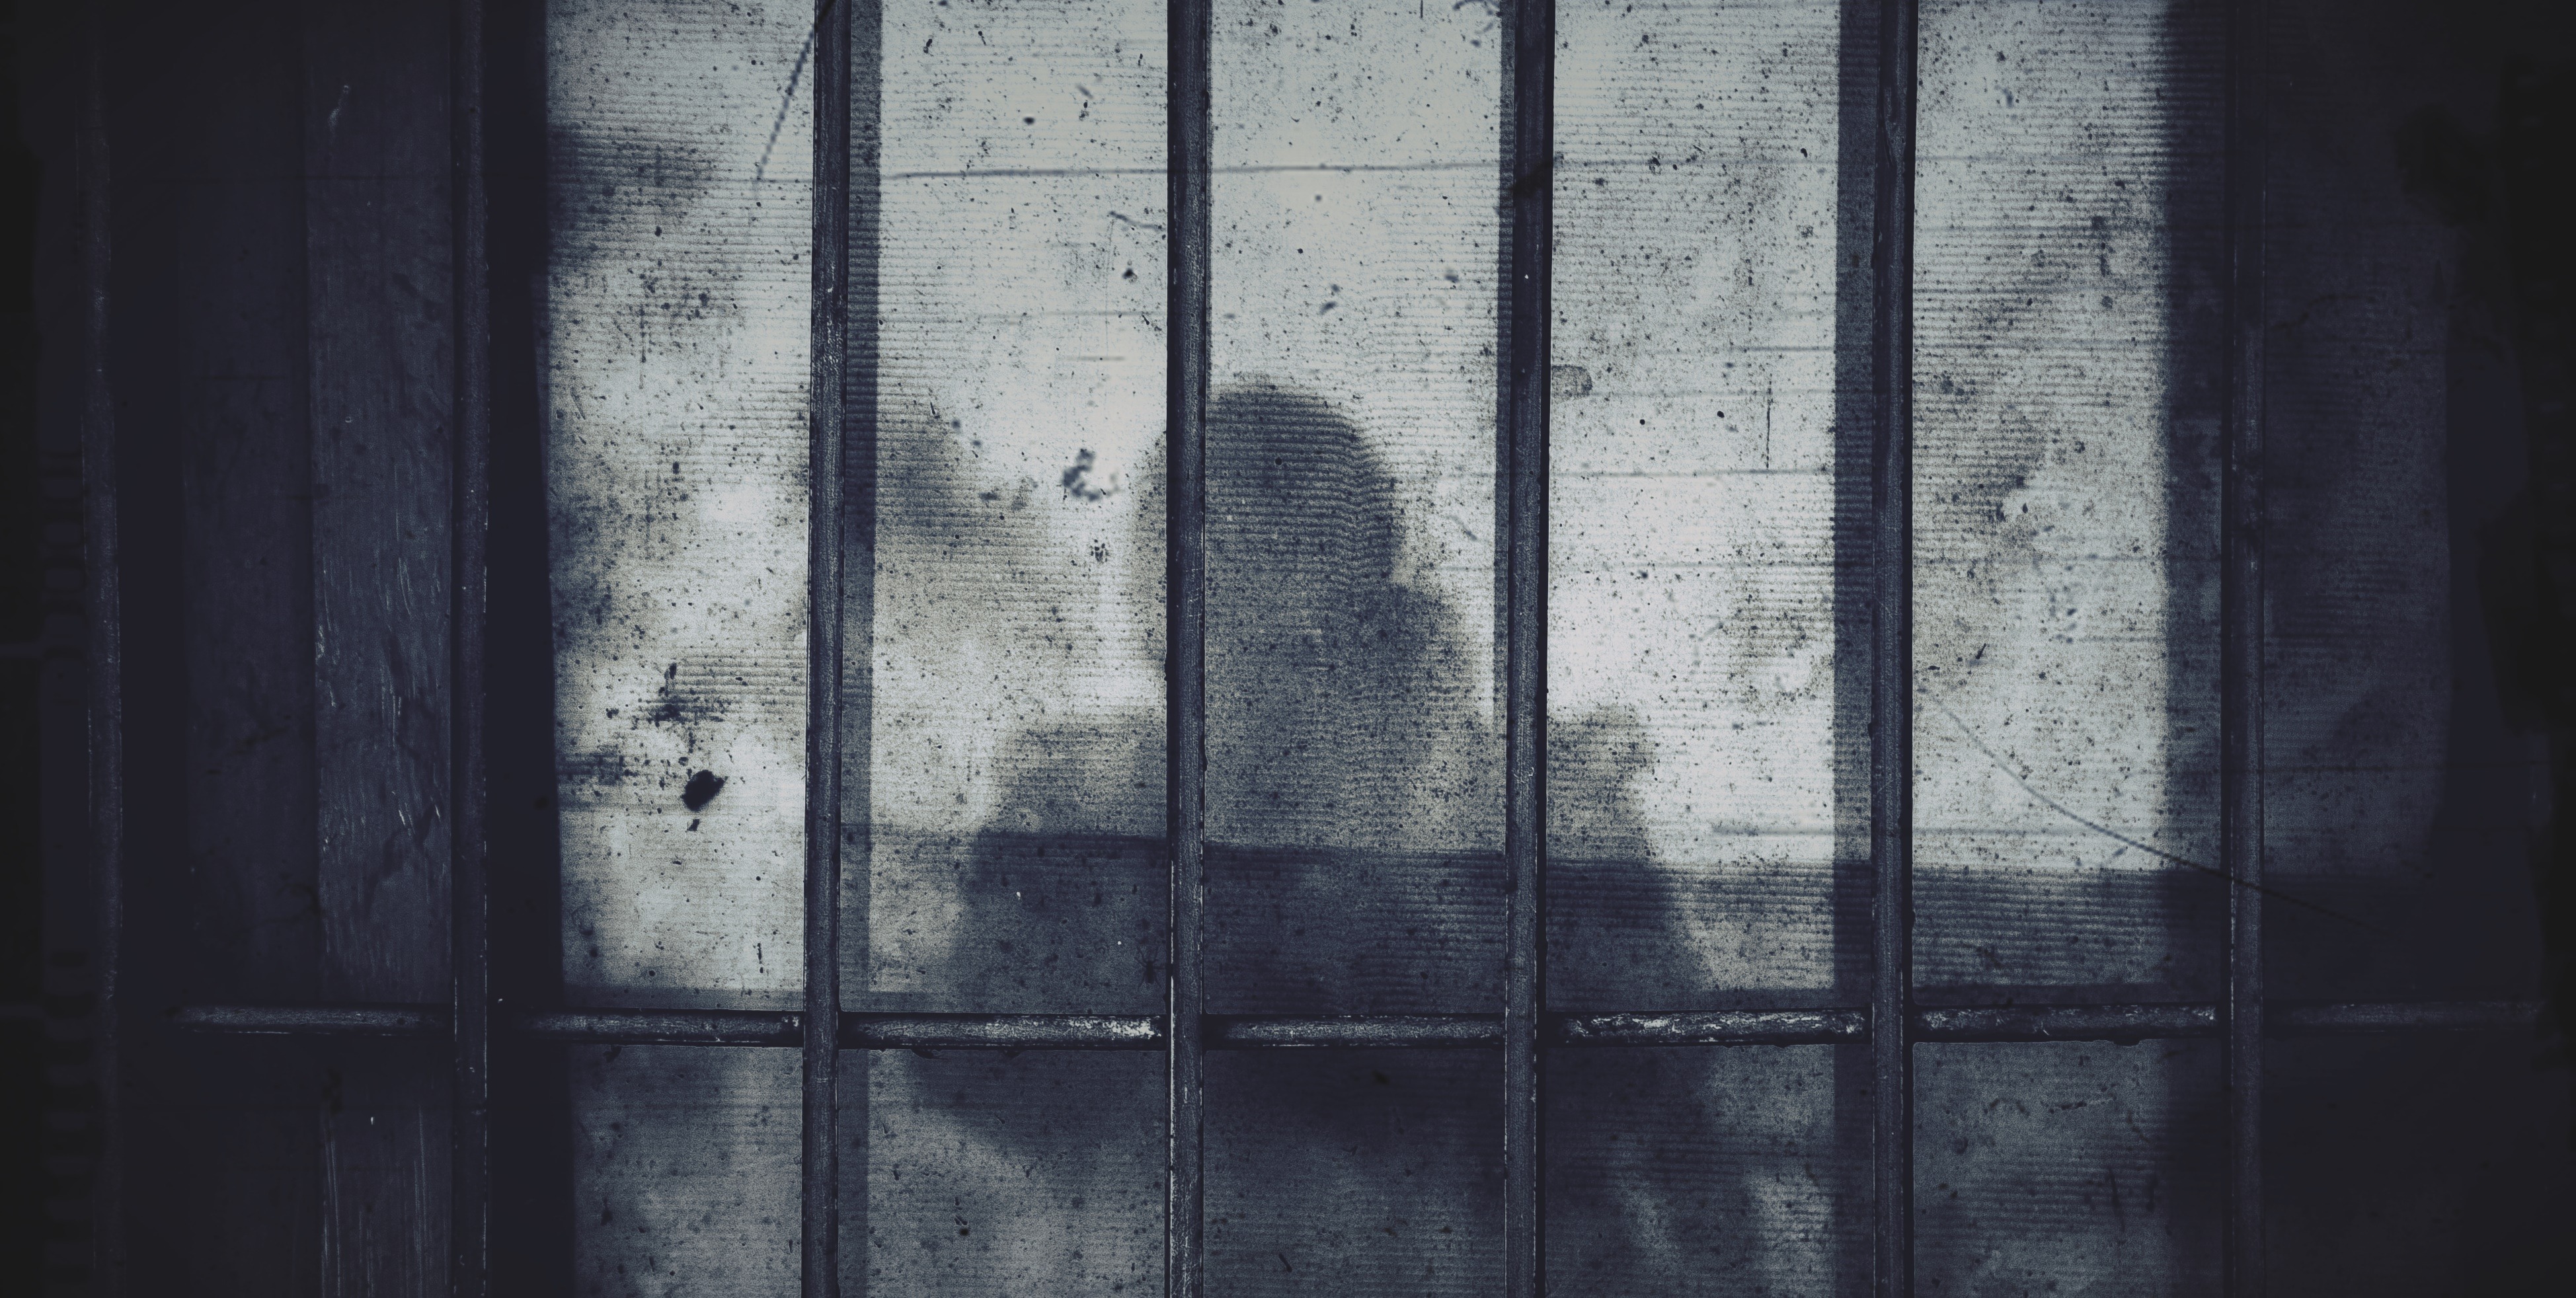 Φυλακές Κορυδαλλού συνθήκες: Ανθρωποκτονίες, αυτοσχέδια όπλα και ναρκωτικά